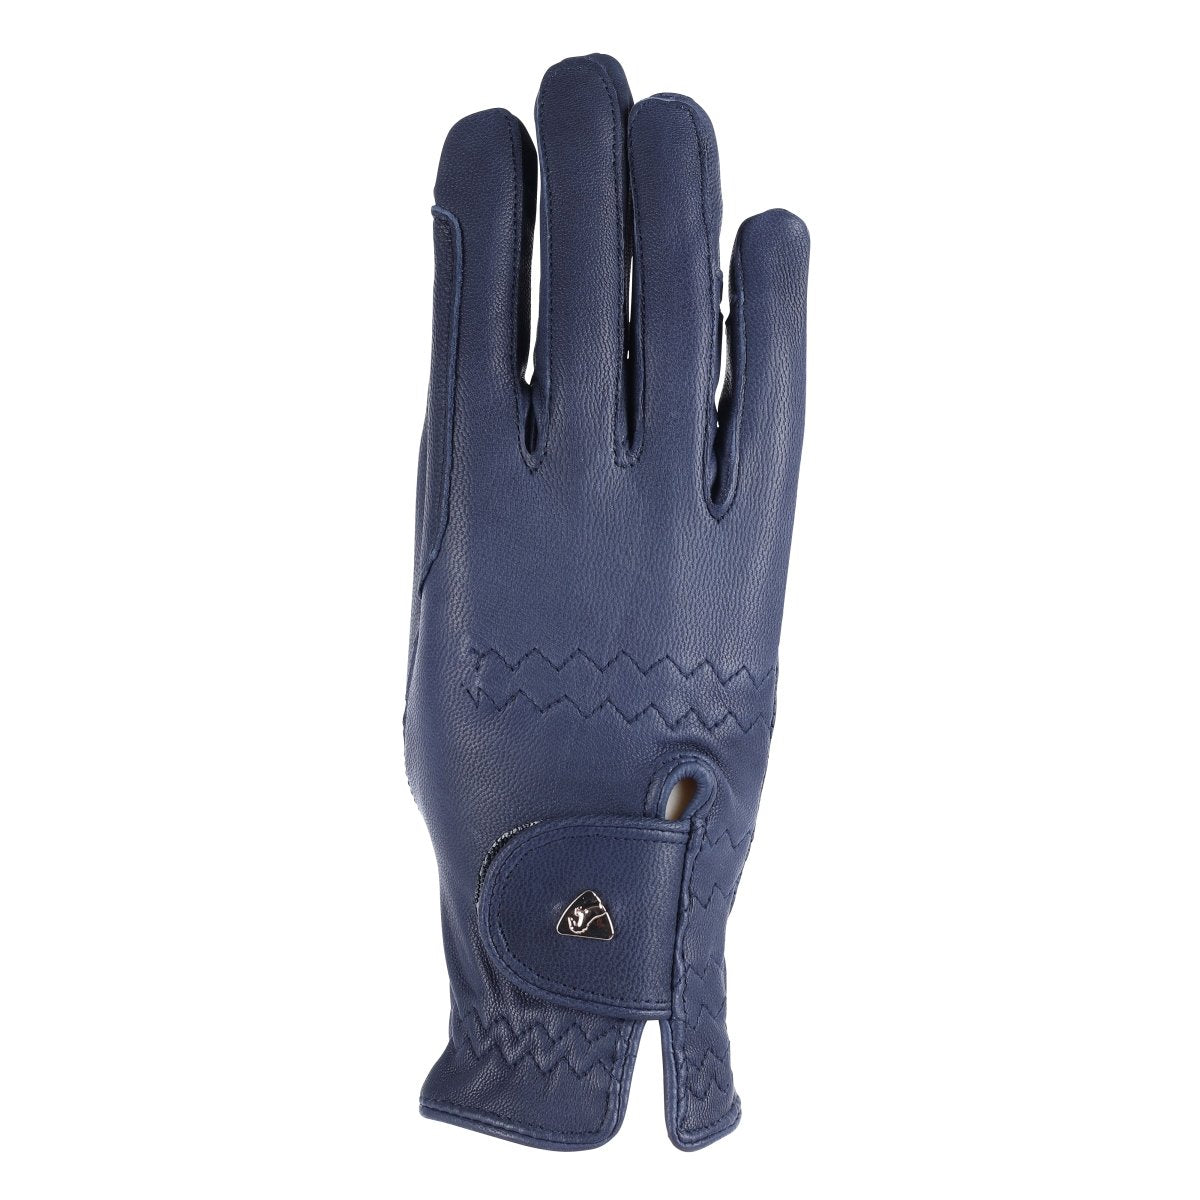 Aubrion Leather Riding Gloves - Black - L